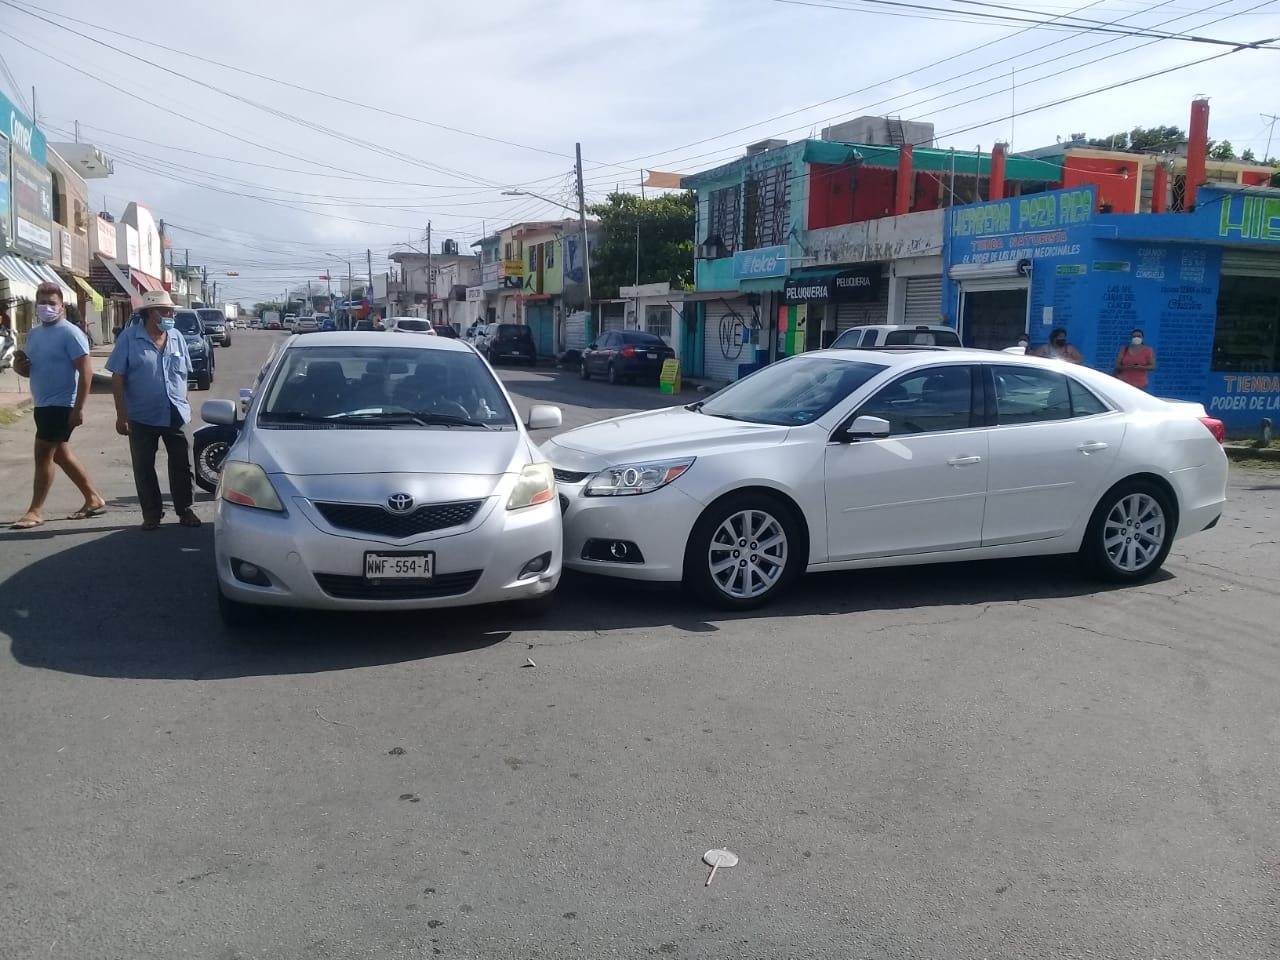 Fuerte choque entre dos automóviles en la colonia centro en Chetumal